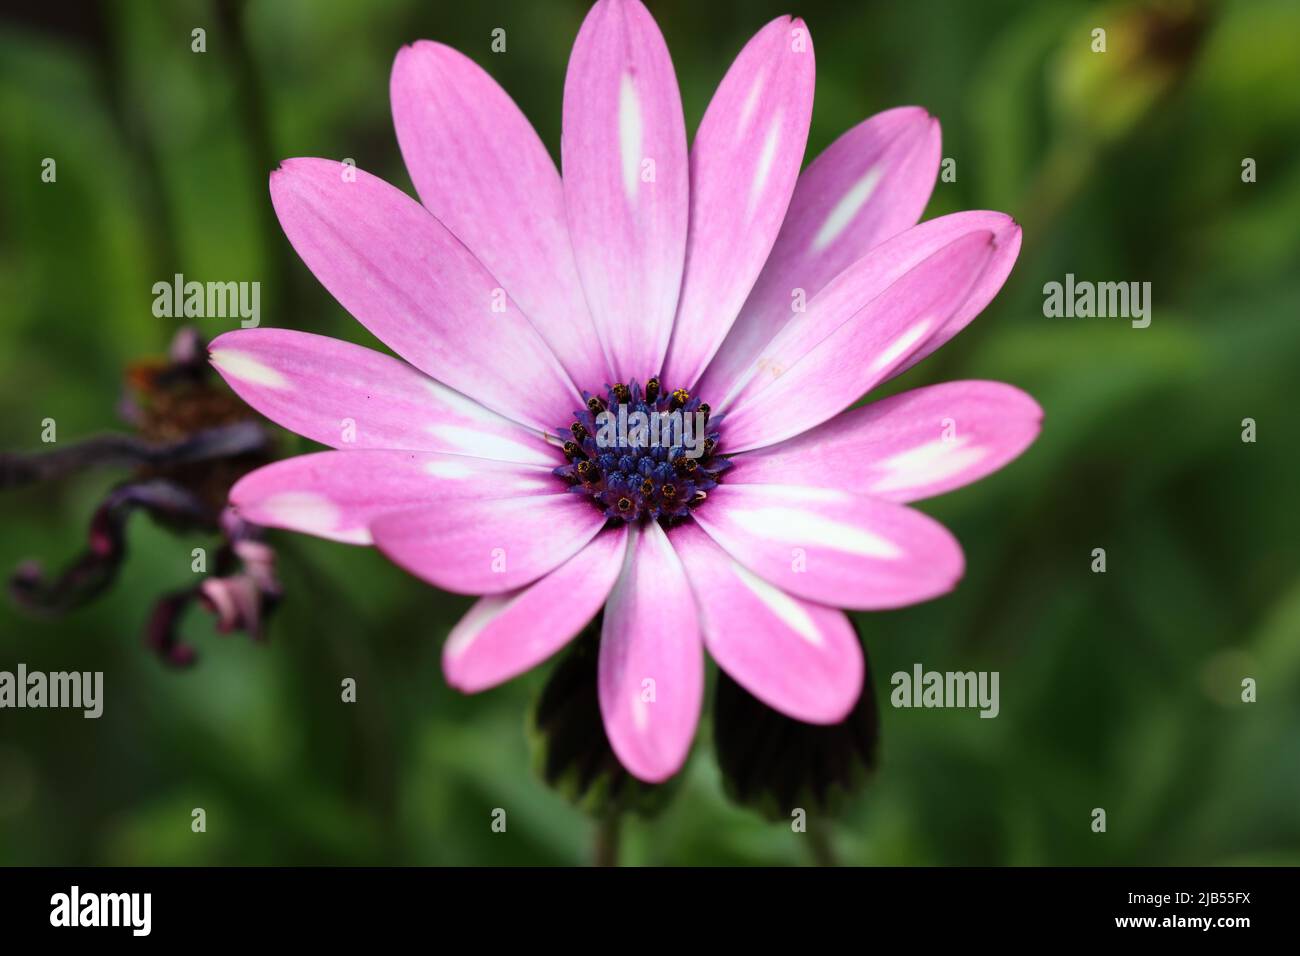 Nahaufnahme einer hübschen hellvioletten osteospermum-Blume mit Blick auf den Blütenkopf, der aus einer zentralen Scheibe besteht, die eine Reihe winziger Individuen enthält Stockfoto